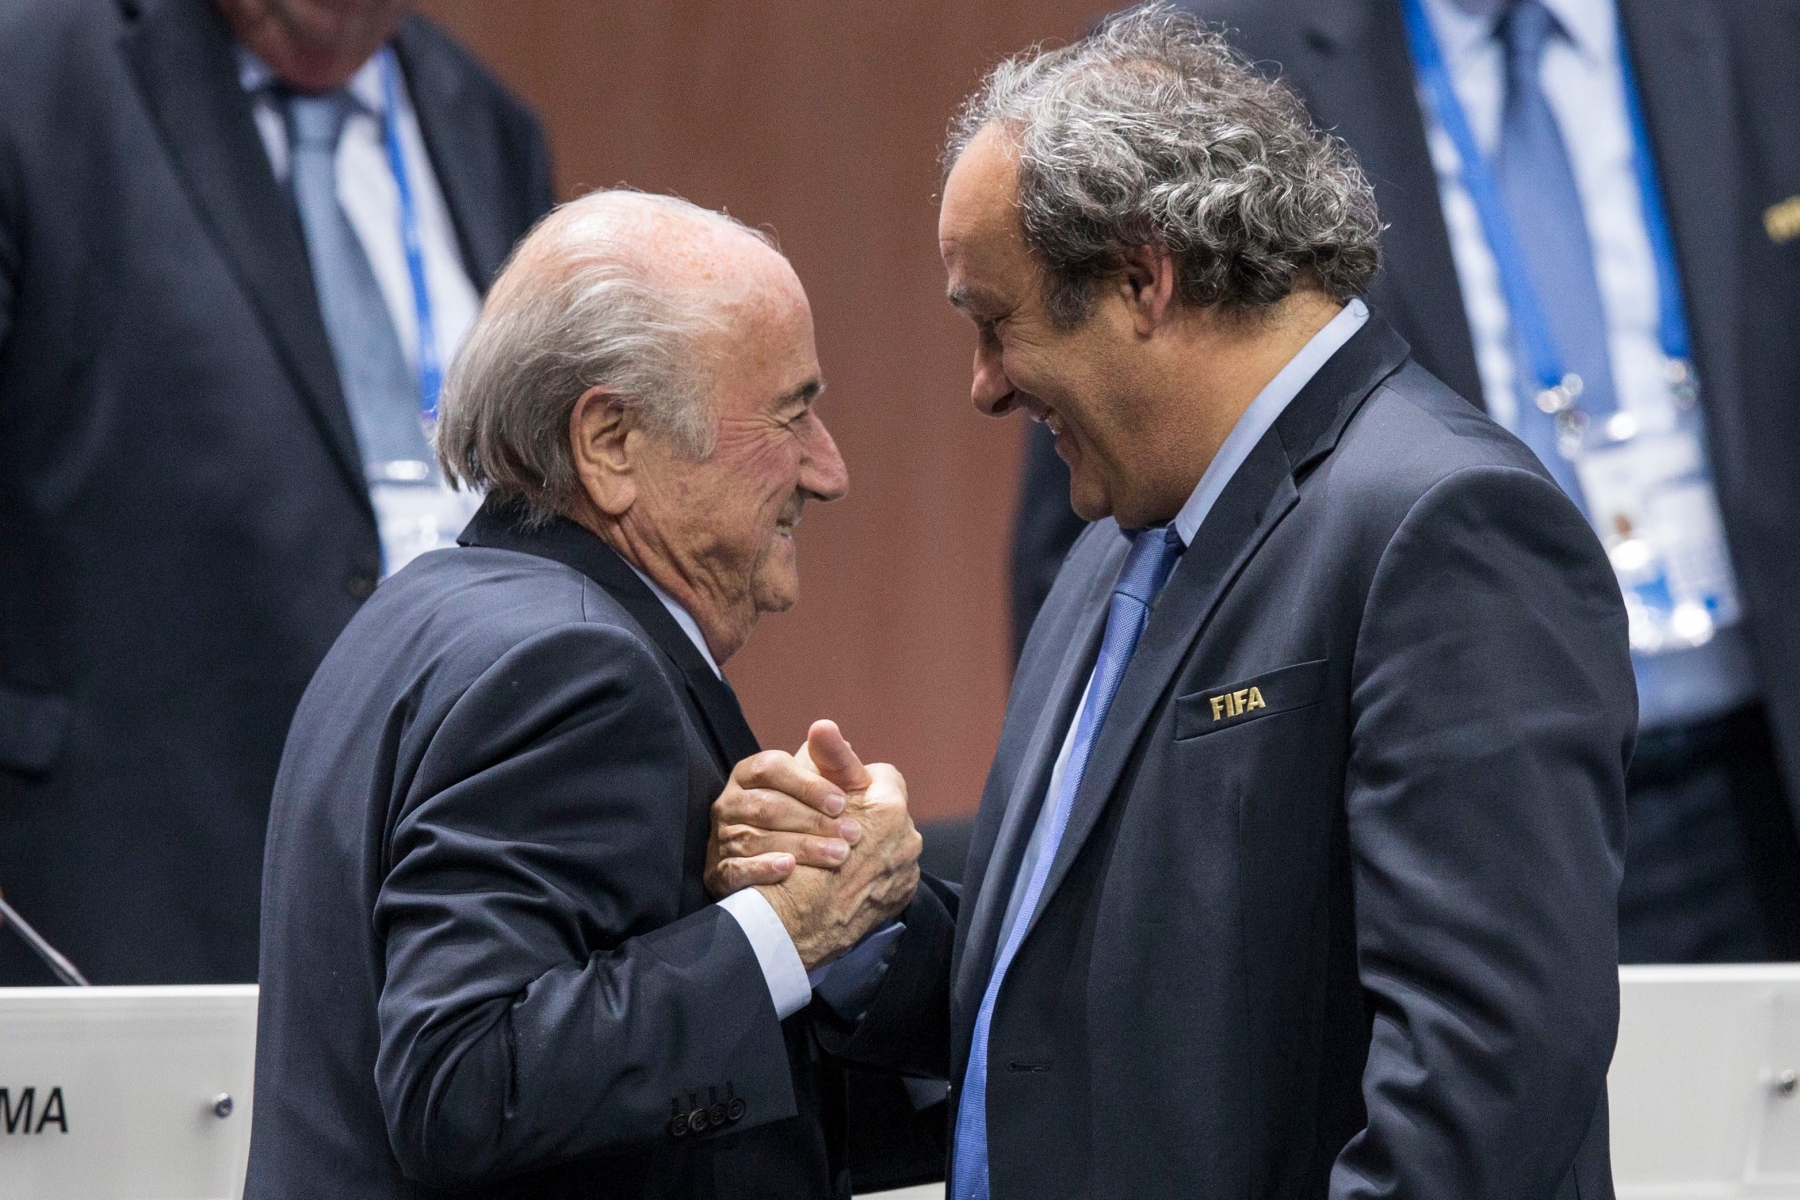 "C'était un truc d'homme à homme. Il allait devenir président de la FIFA. La FIFA! J'avais confiance", ajoute Platini au sujet de Sepp Blatter.